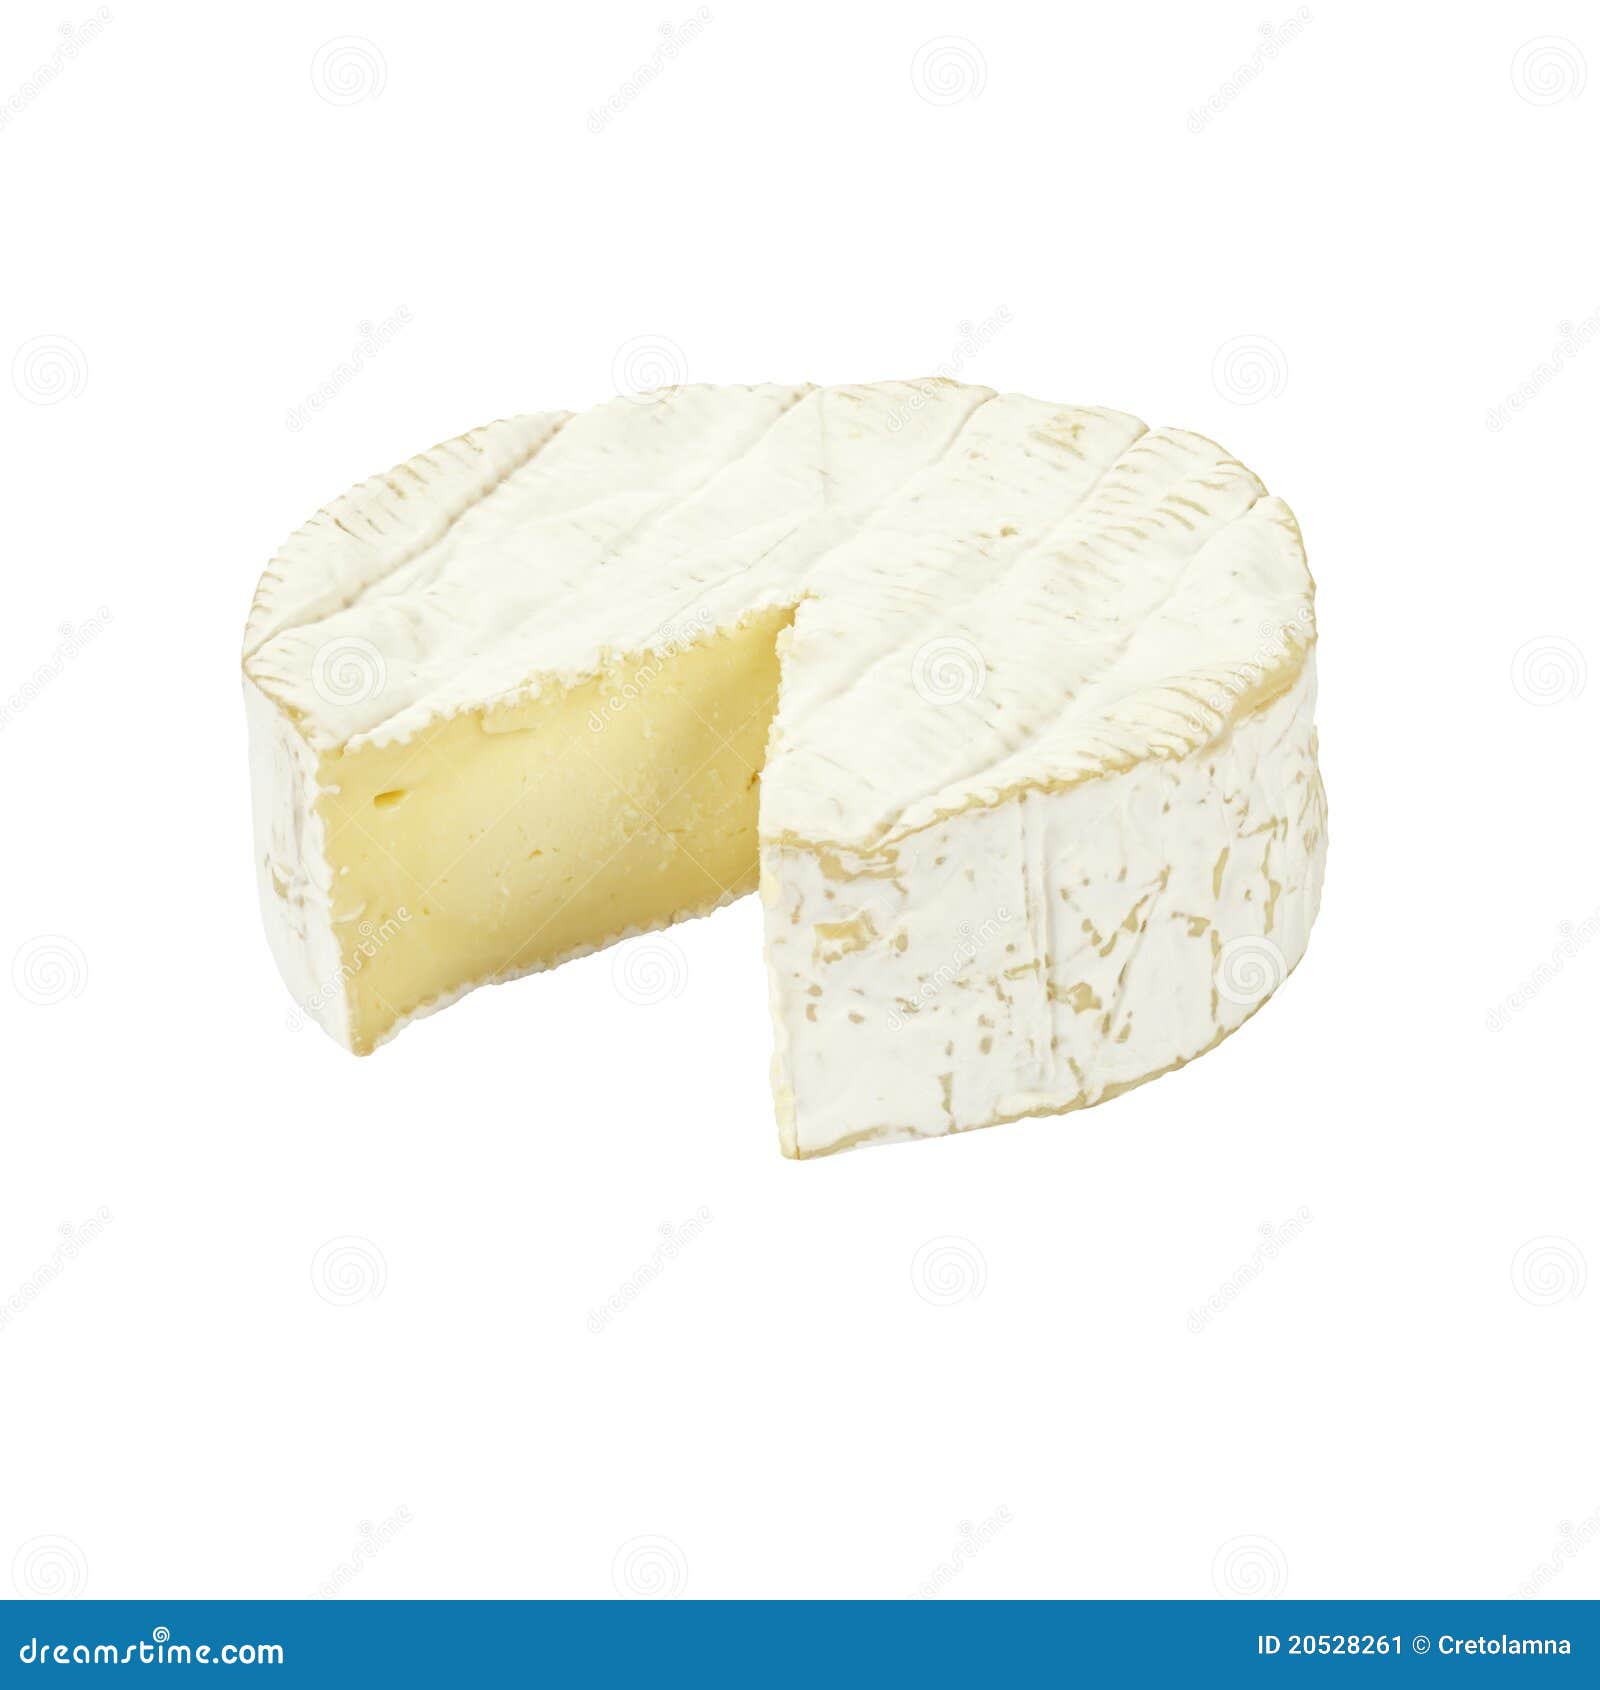 camembert cheese.